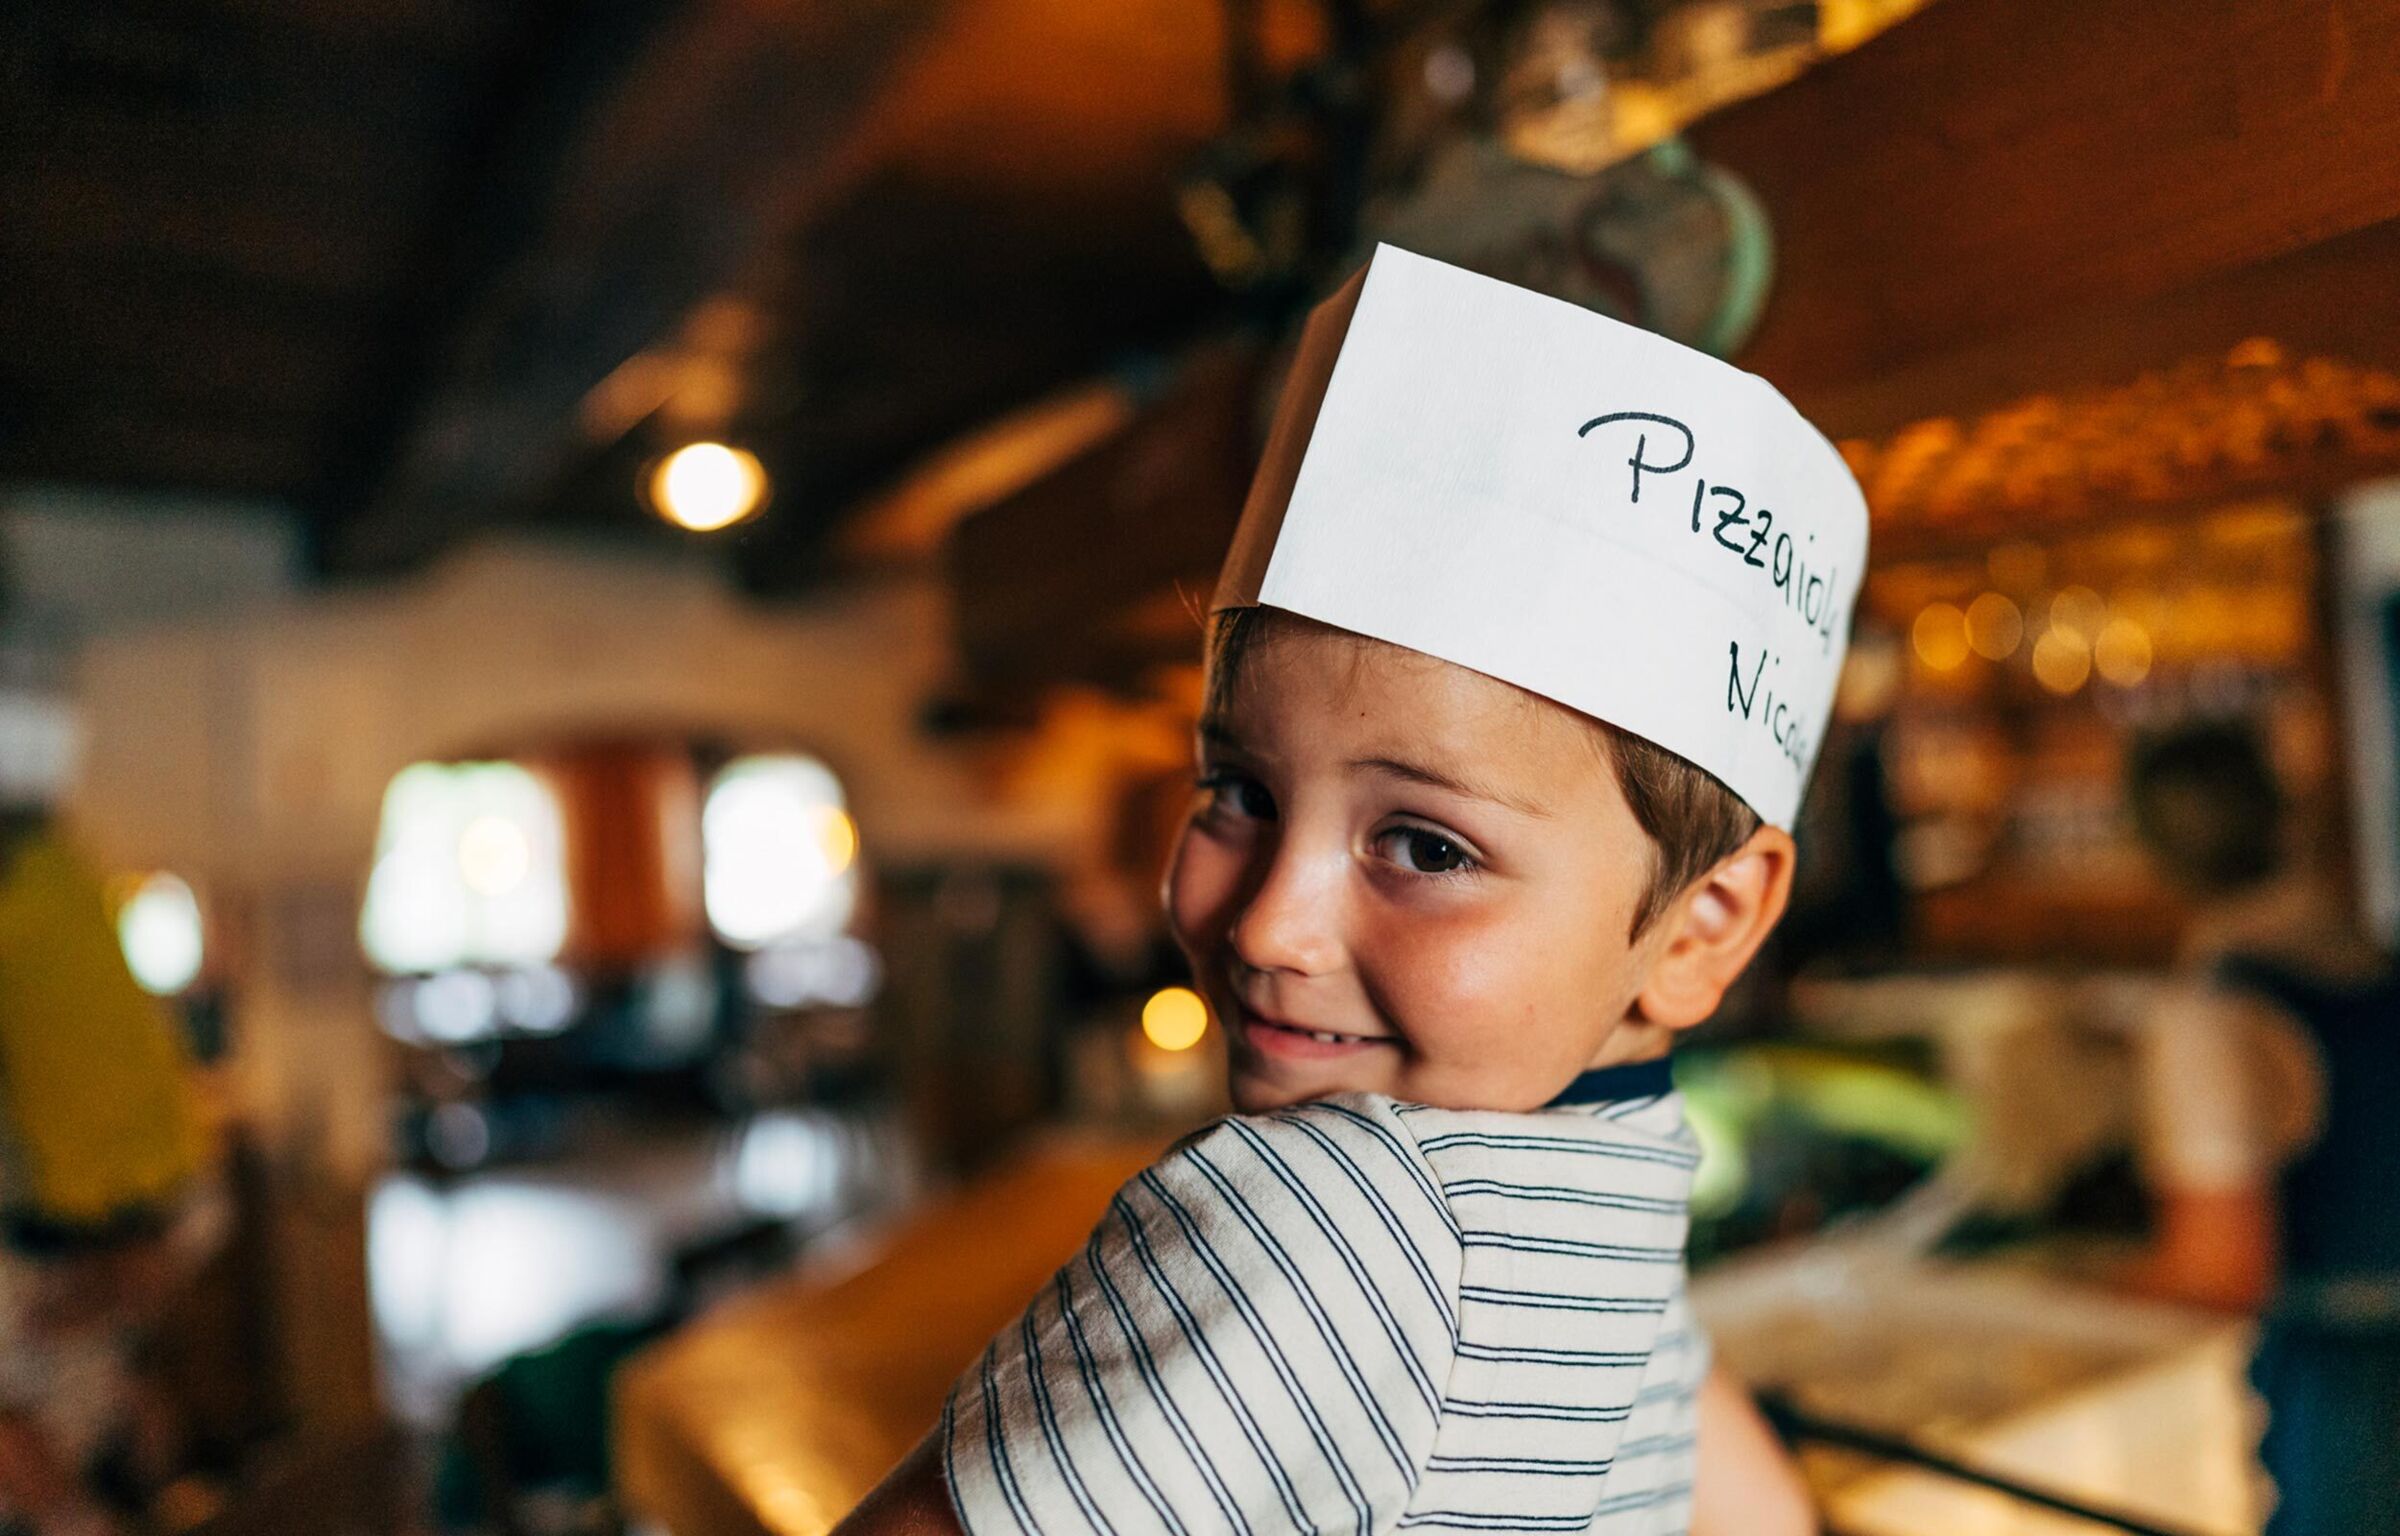 Kind hat eine Kochhaube auf auf der Pizzabackkurs steht und lächelt in die Kamera.